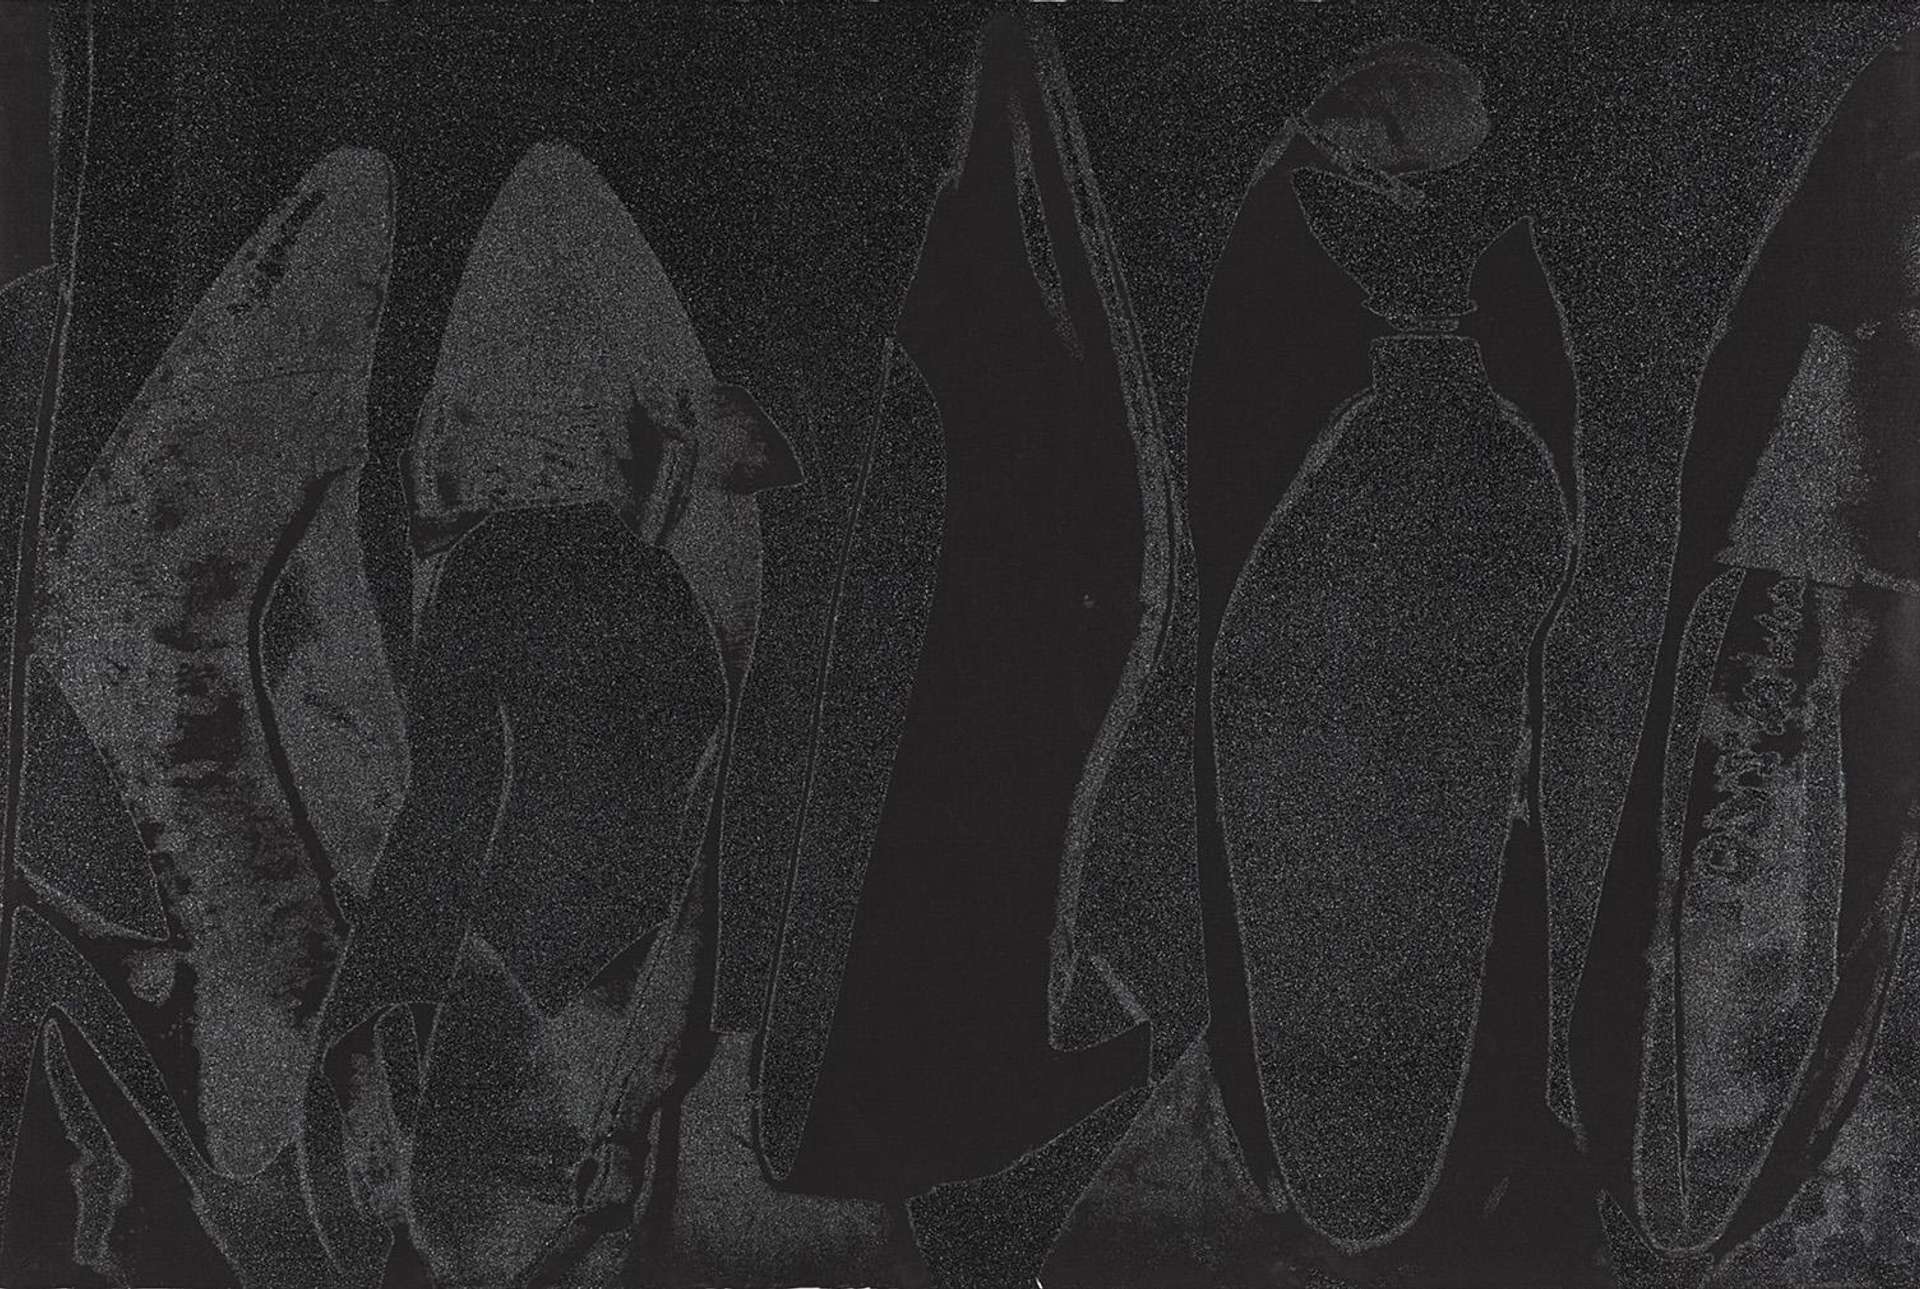 Diamond Dust Shoes (F. & S. II. 256) by Andy Warhol - MyArtBroker